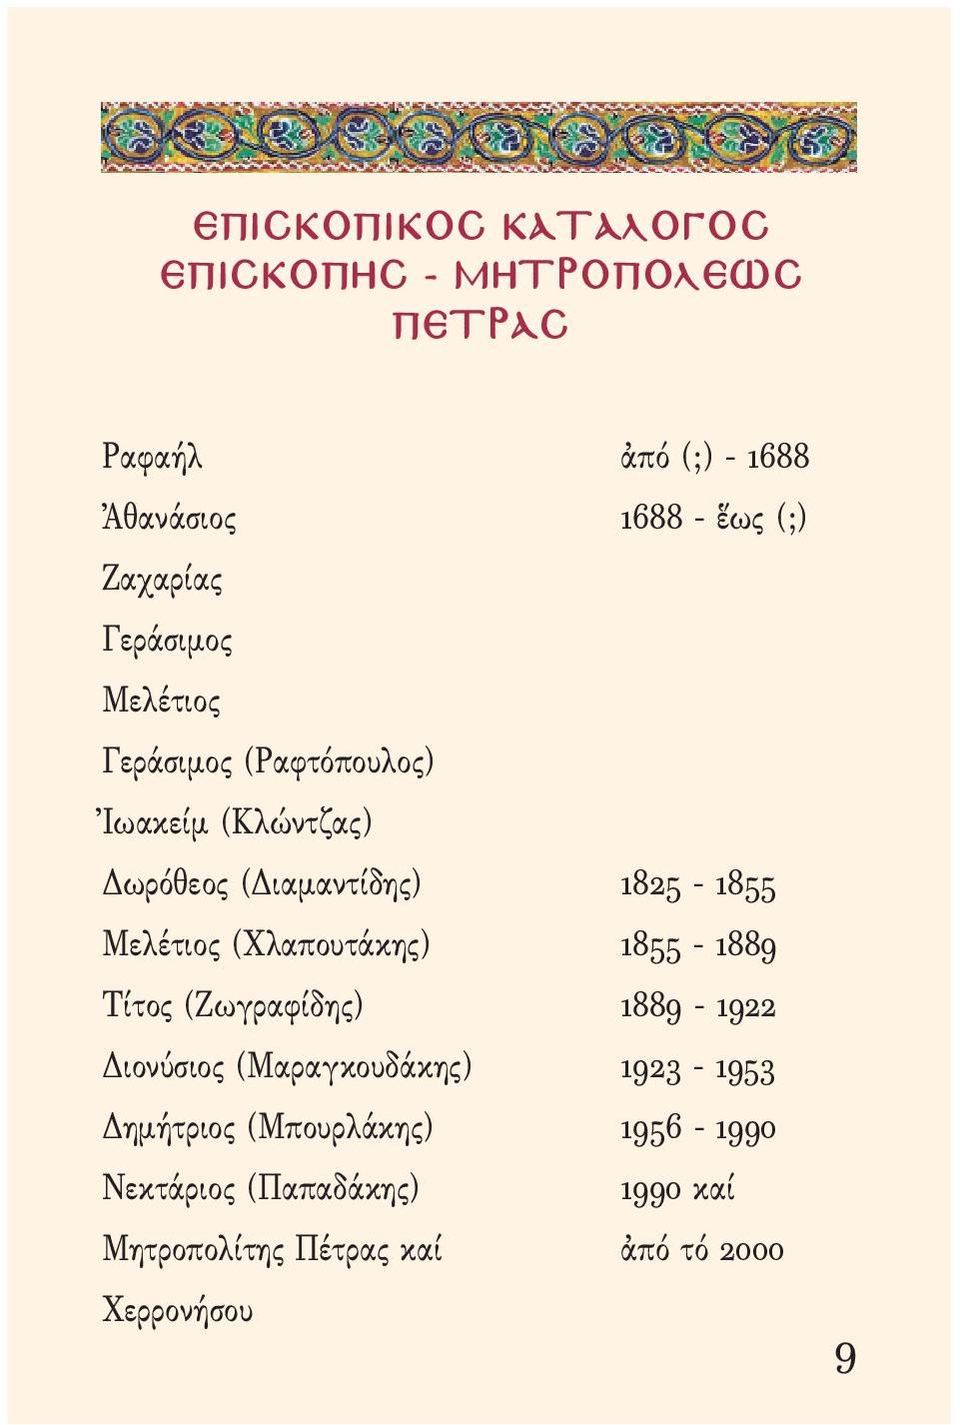 Μελέτιος (Χλαπουτάκης) 1855-1889 Τίτος (Ζωγραφίδης) 1889-1922 Διονύσιος (Μαραγκουδάκης) 1923-1953